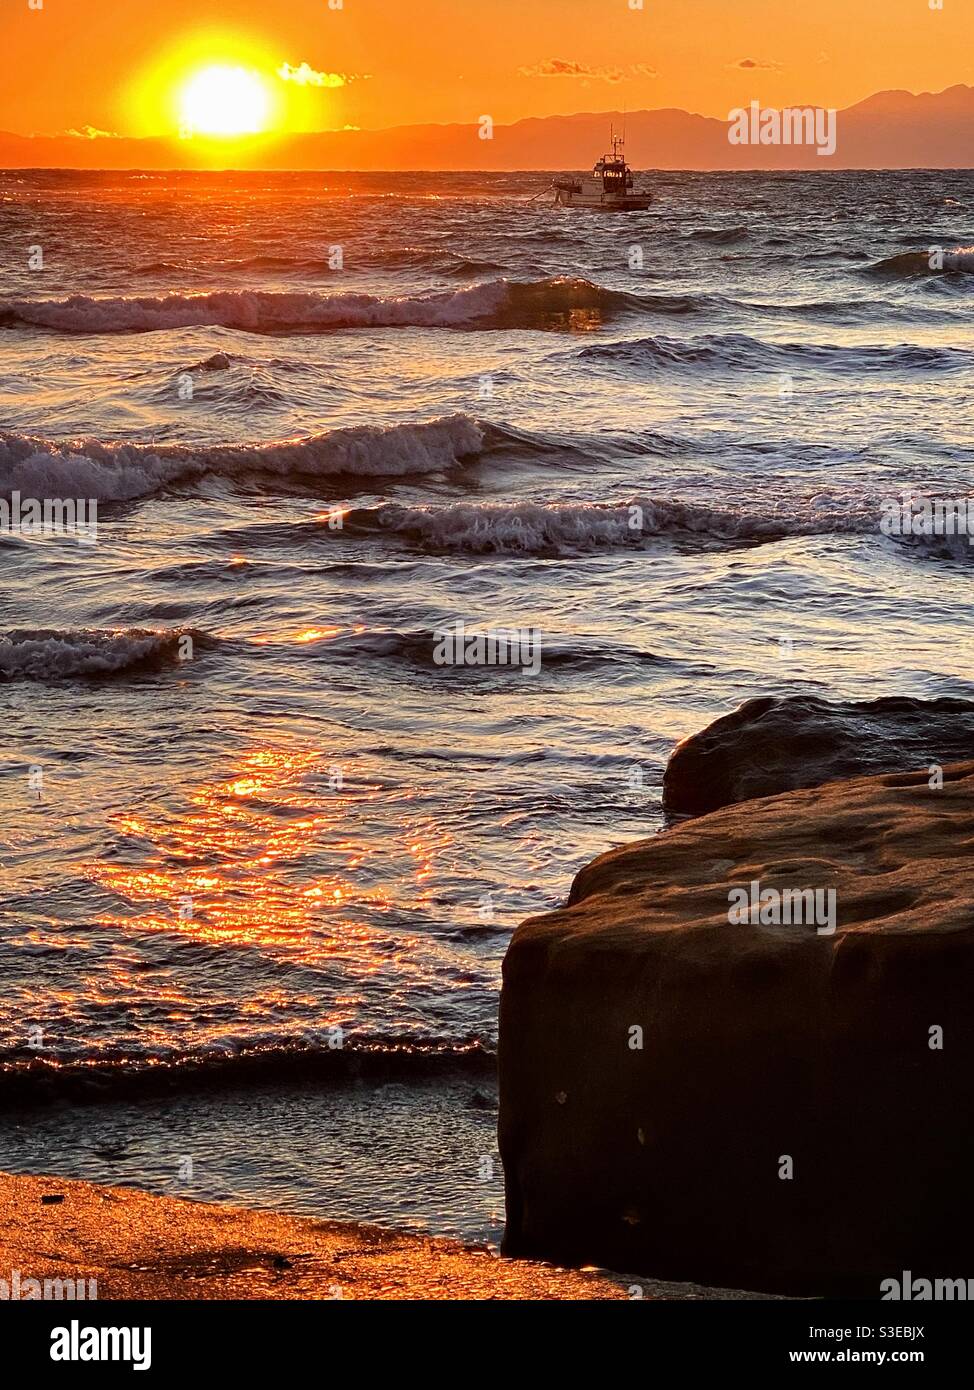 La barca si imbarca su un mare agitate al tramonto. Contrasto del cielo arancione con onde scintillanti metallizzate. Foto Stock